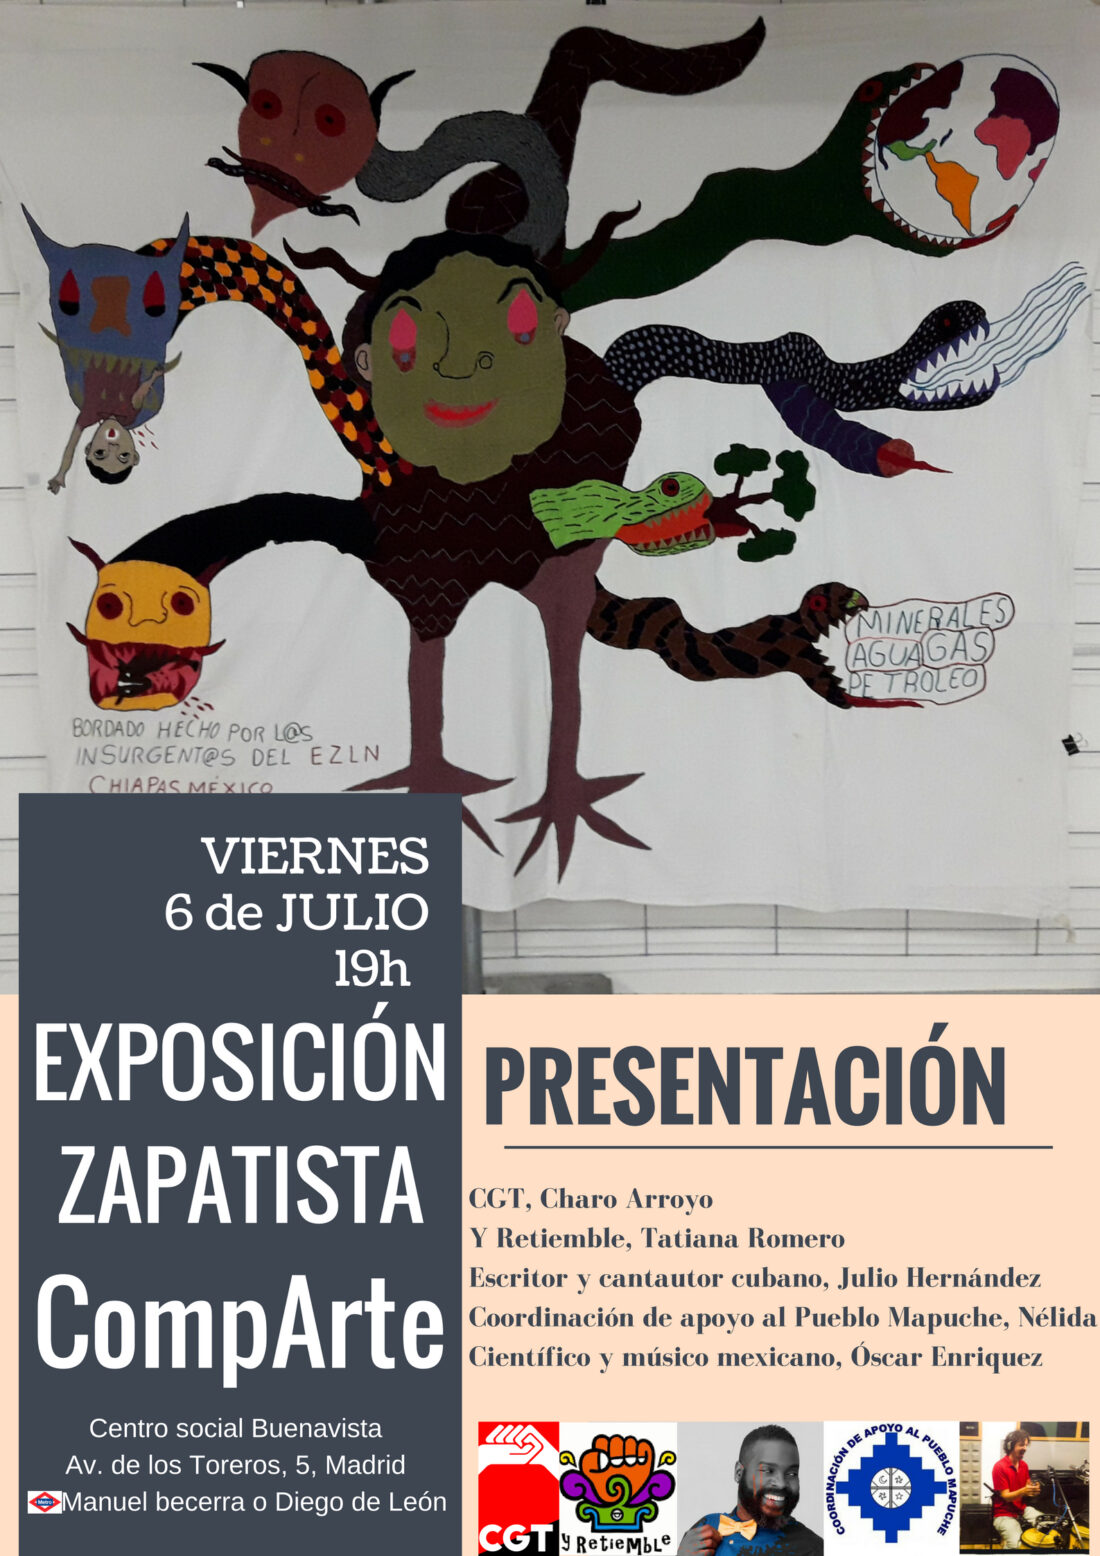 INAUGURACIÓN de la Exposición Zapatista CompArte en Madrid